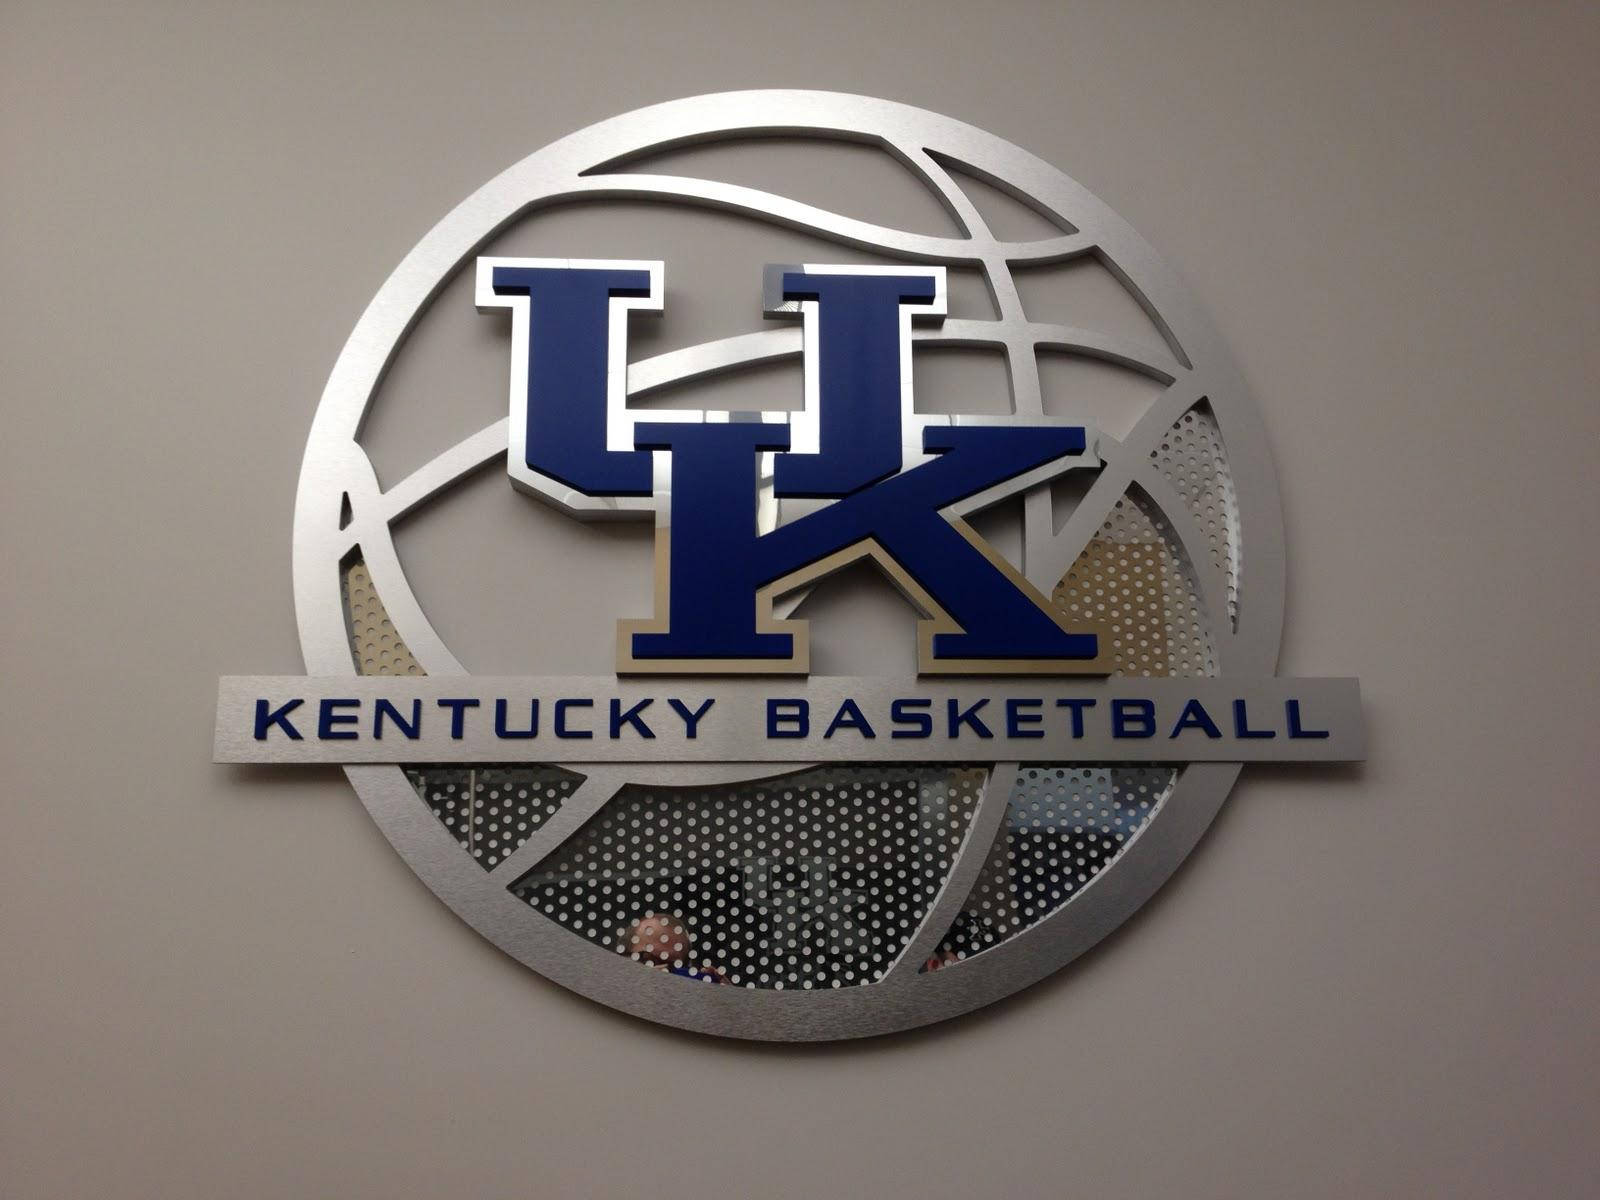 Universitetet af Kentucky Basketball Signage Wallpaper